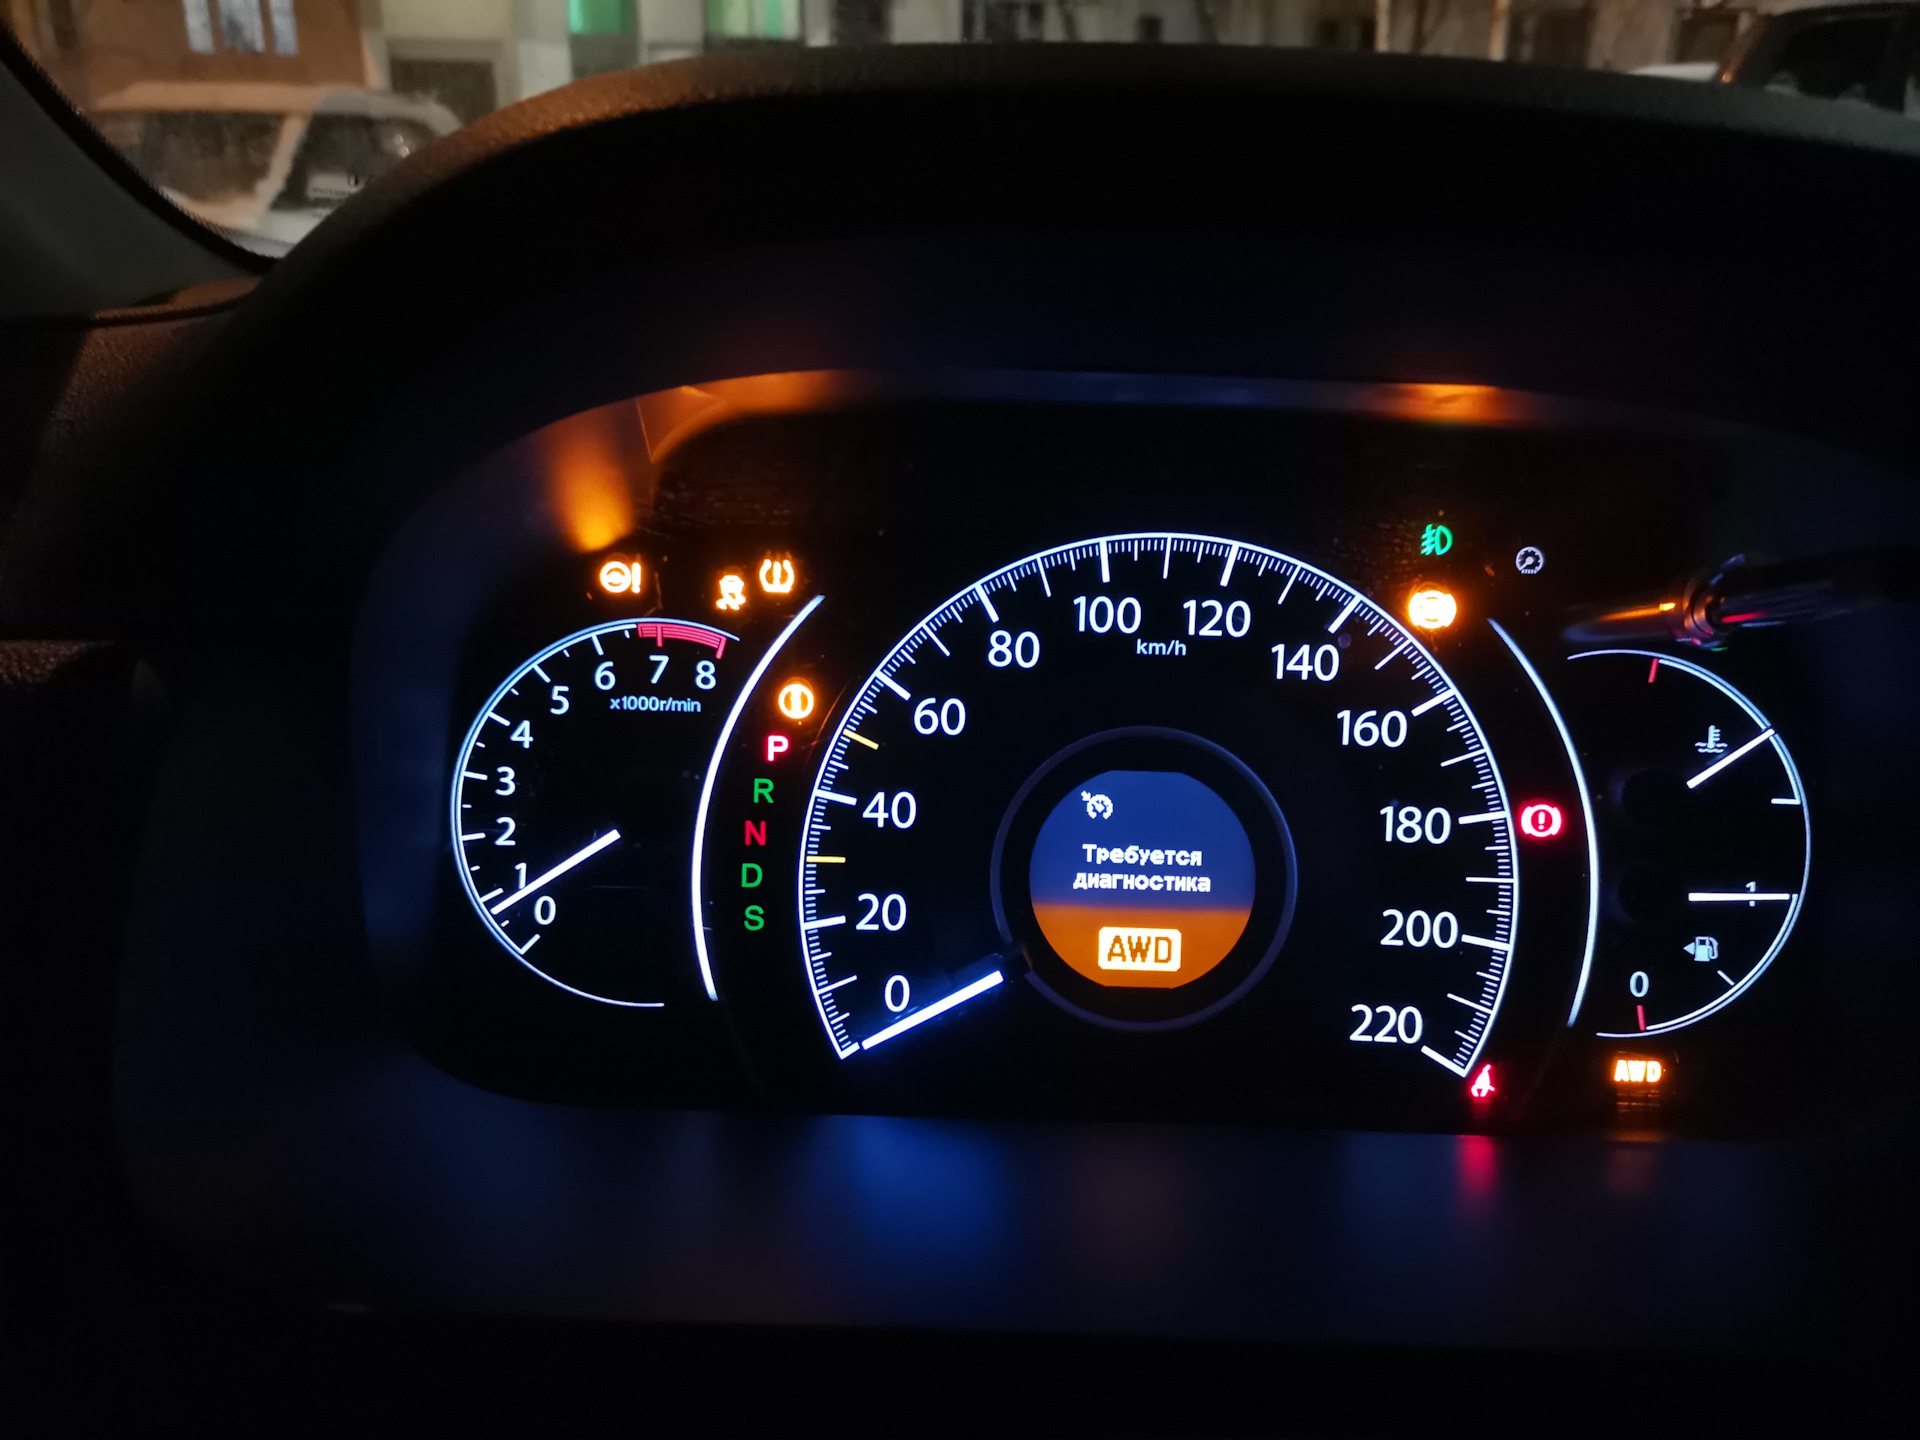 Honda v панель. Приборная панель Honda CRV. Панель приборов Хонда СРВ 2. Honda CRV 2017 приборная панель. Панель приборов Хонда СРВ 4.